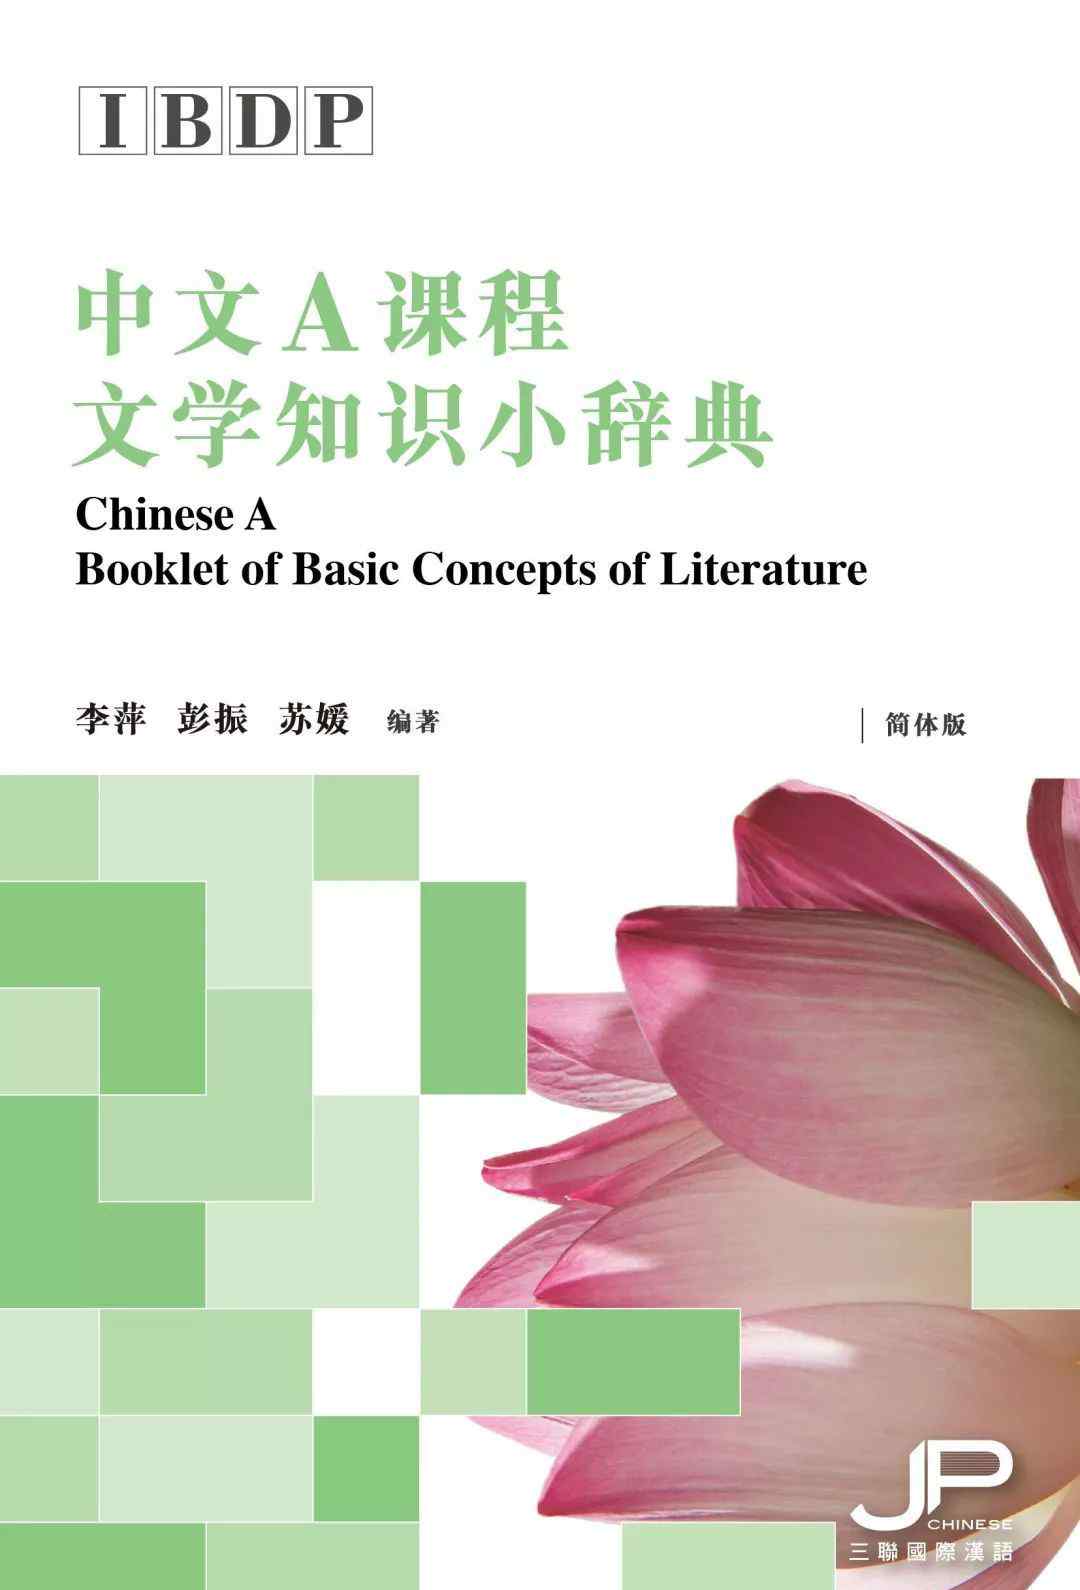 小说常见术语 Q&A |《IBDP中文A课程文学知识小辞典》